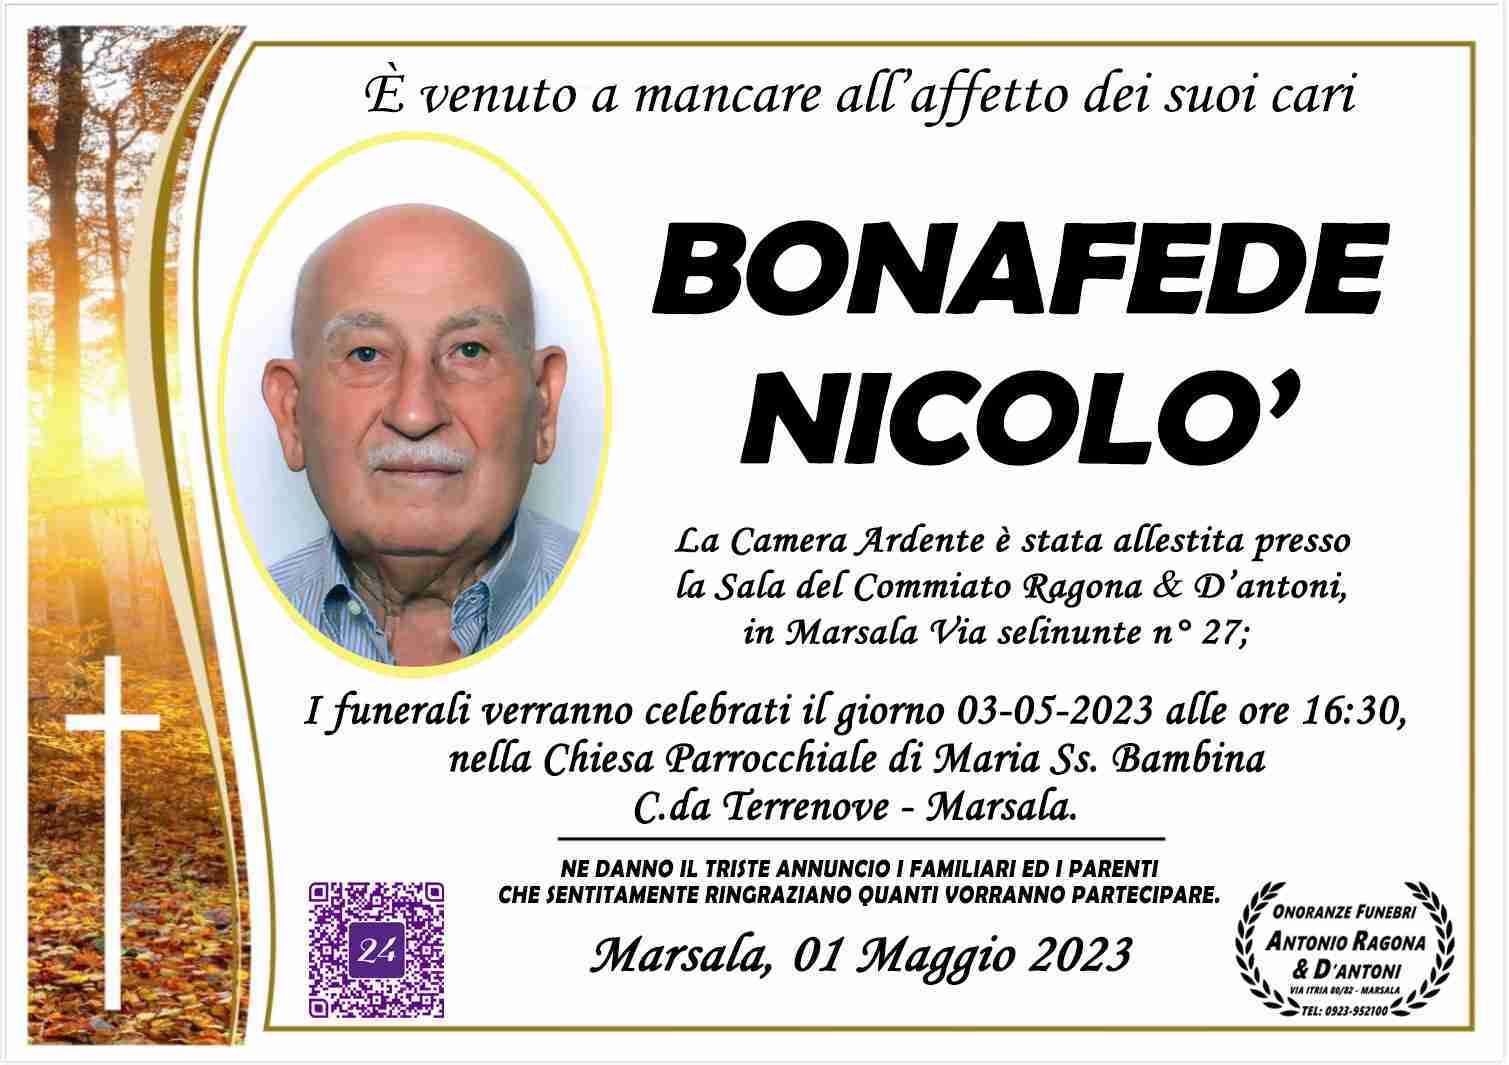 Nicolò Bonafede